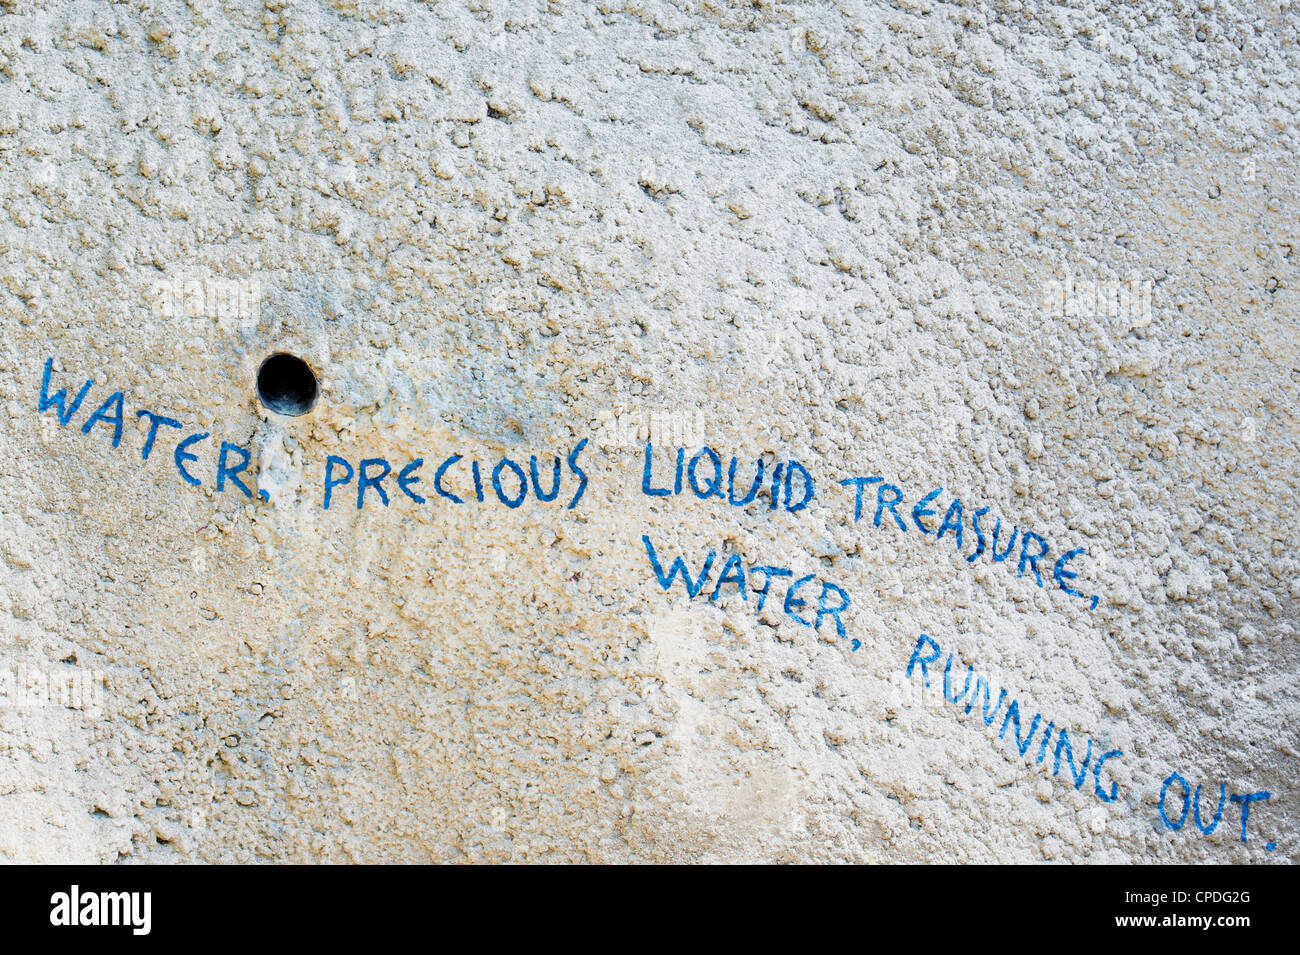 Wasser kostbar, flüssigen Schatz, Wasser zur Neige, Aussage an einer Wand im Eden Project, Cornwall, England Stockfoto